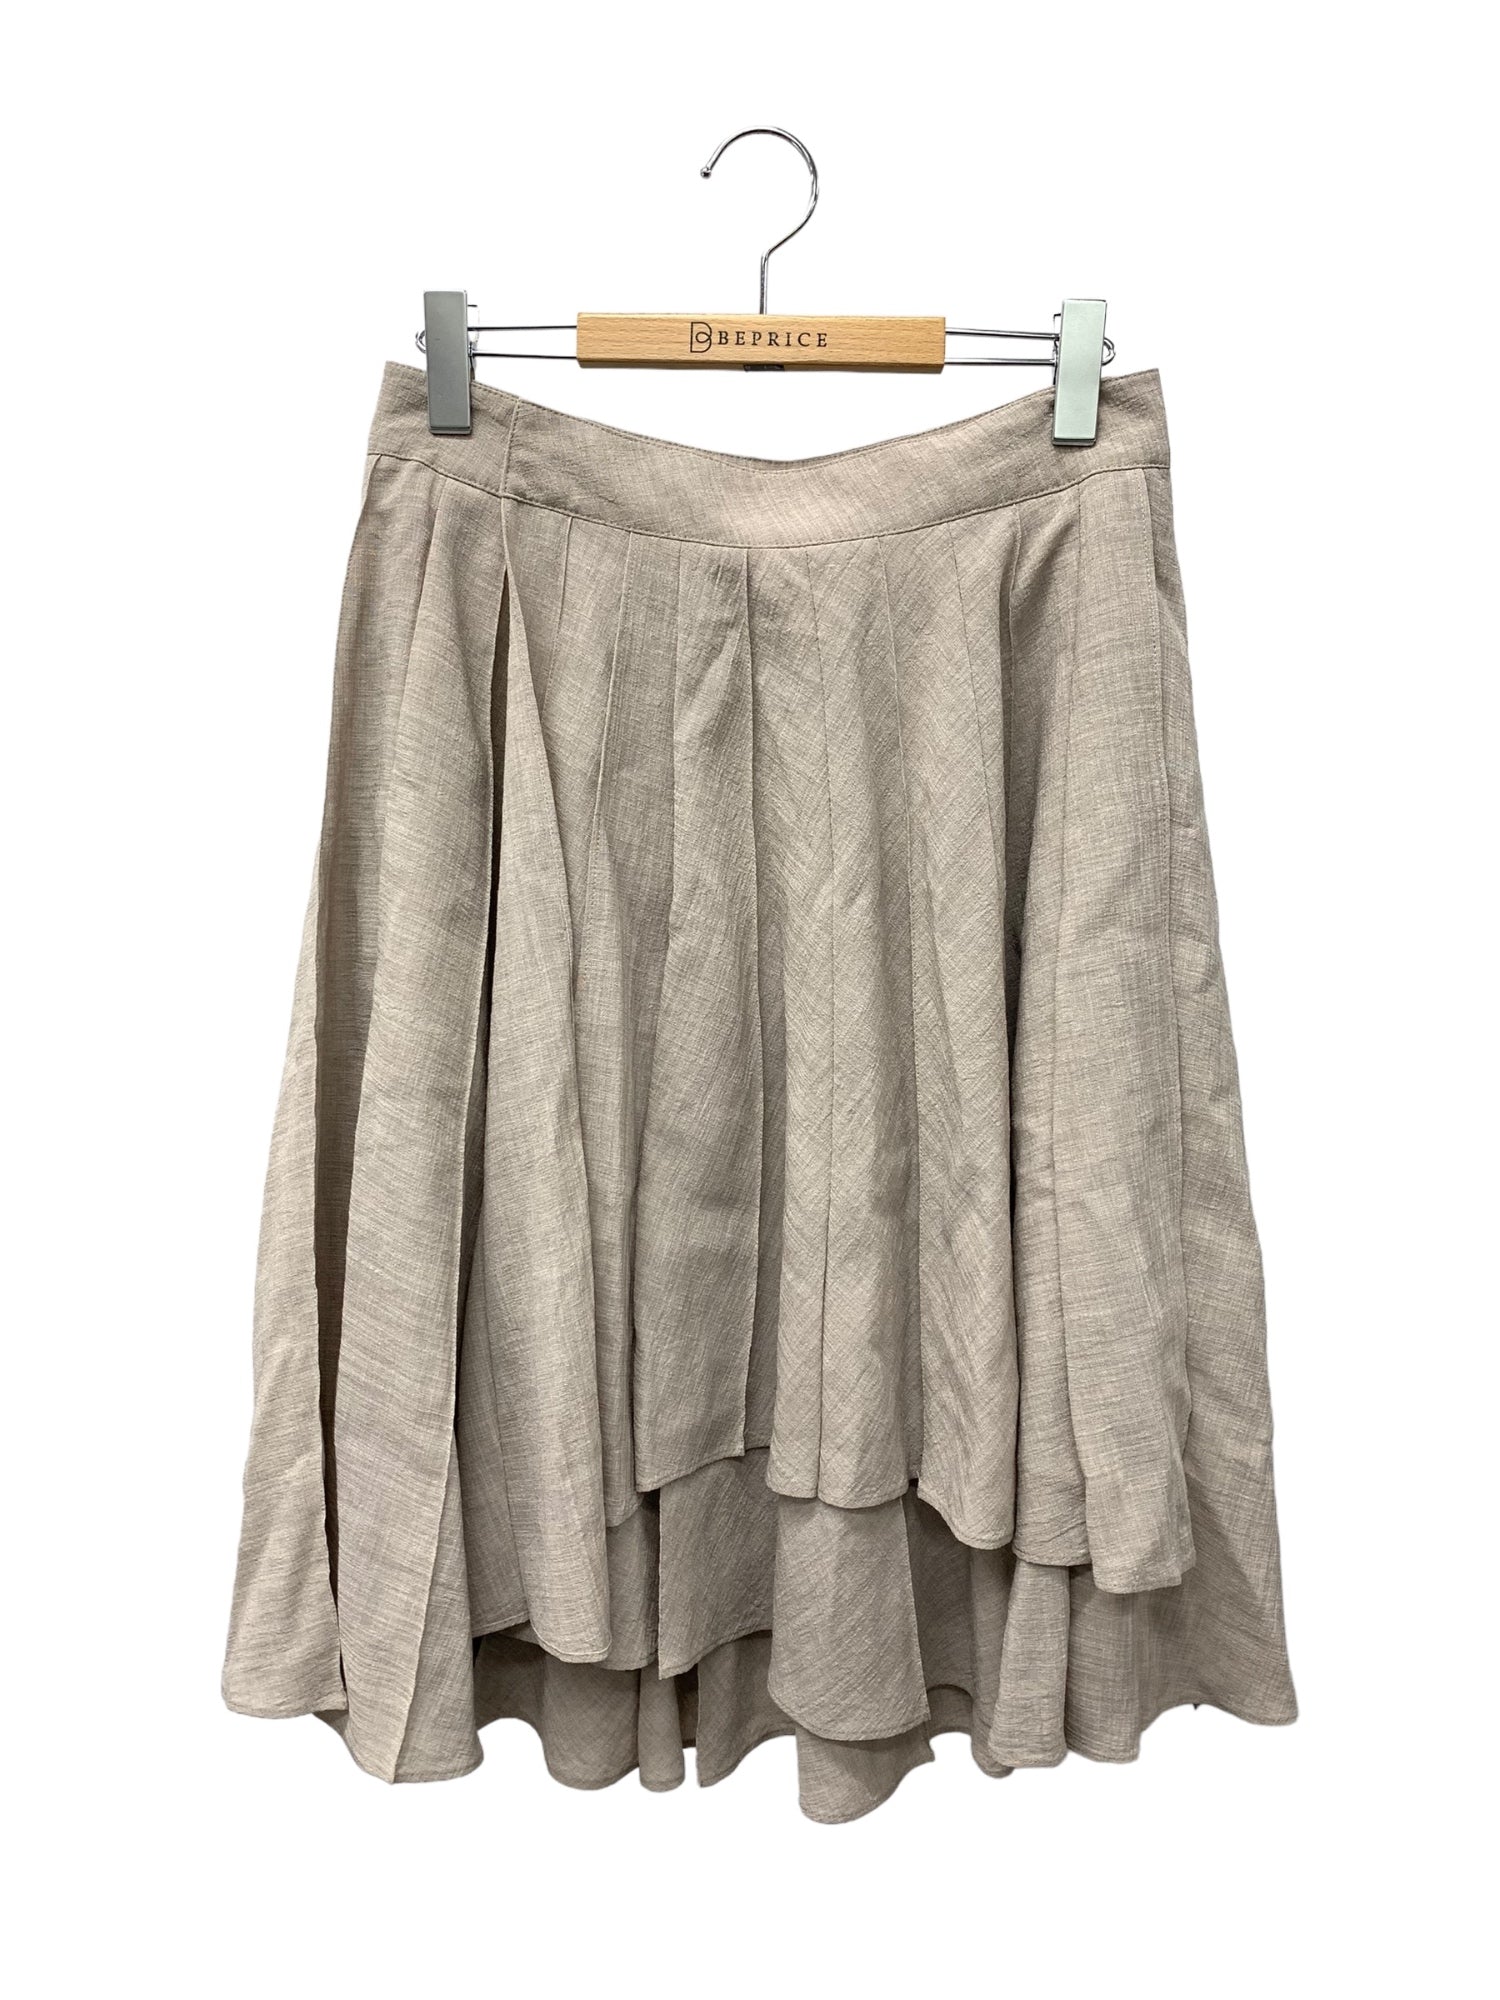 デイジーリン for フォクシー Daisy Washable Overwrap Pleat Skirt 35696 スカート 40 ベージュ |  中古ブランド品・古着通販ビープライス